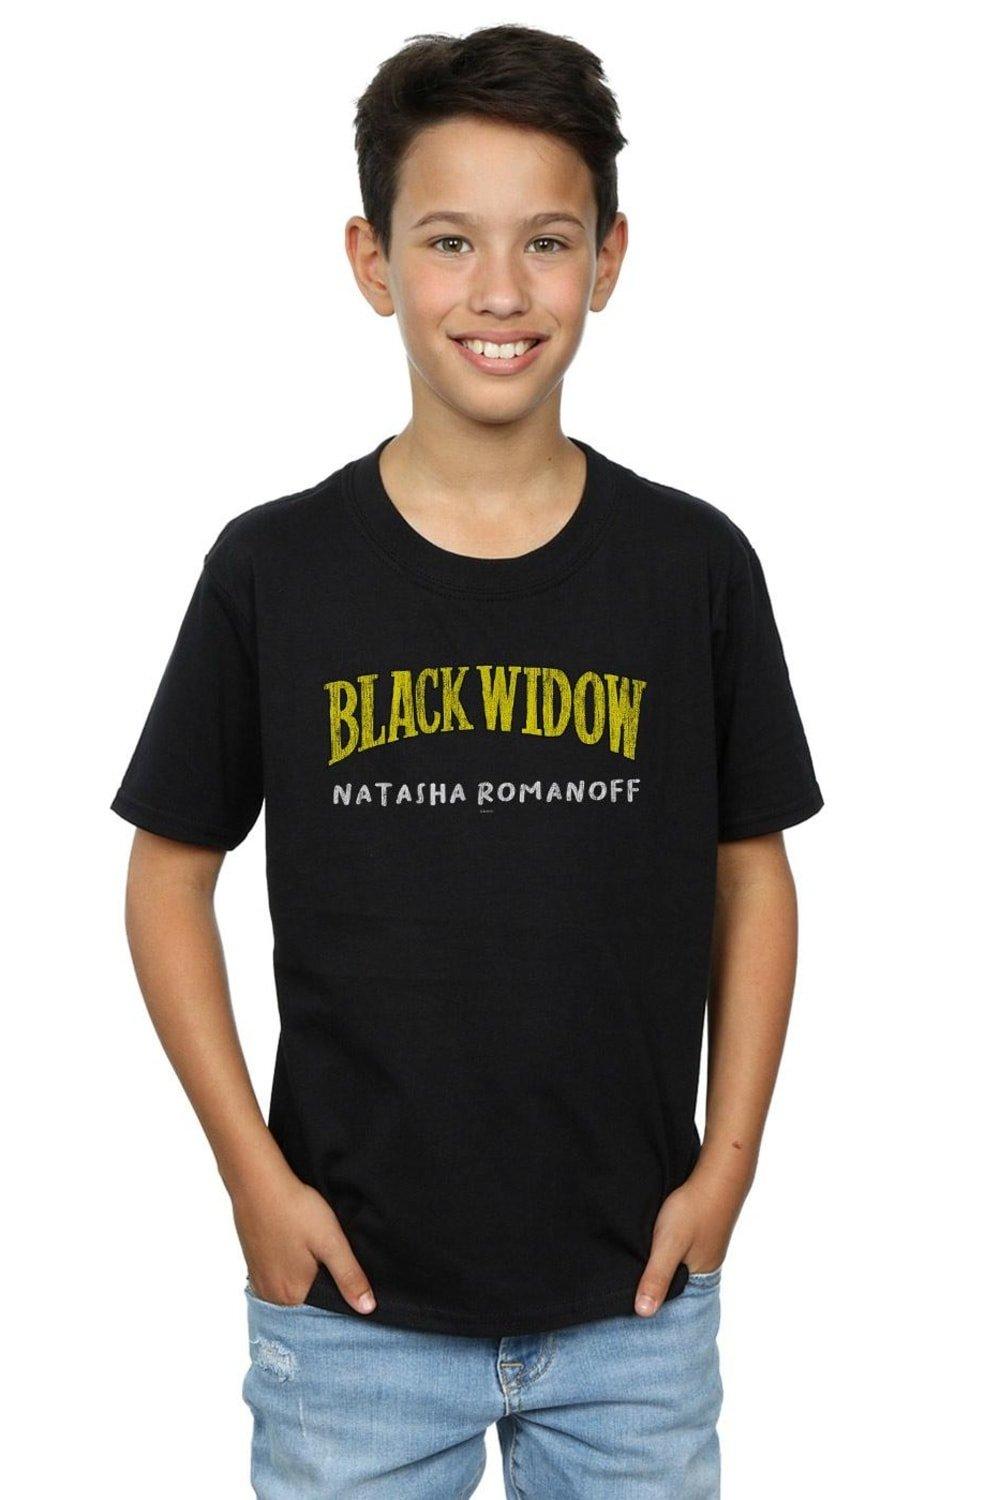 Black Widow AKA Natasha Romanoff T-Shirt